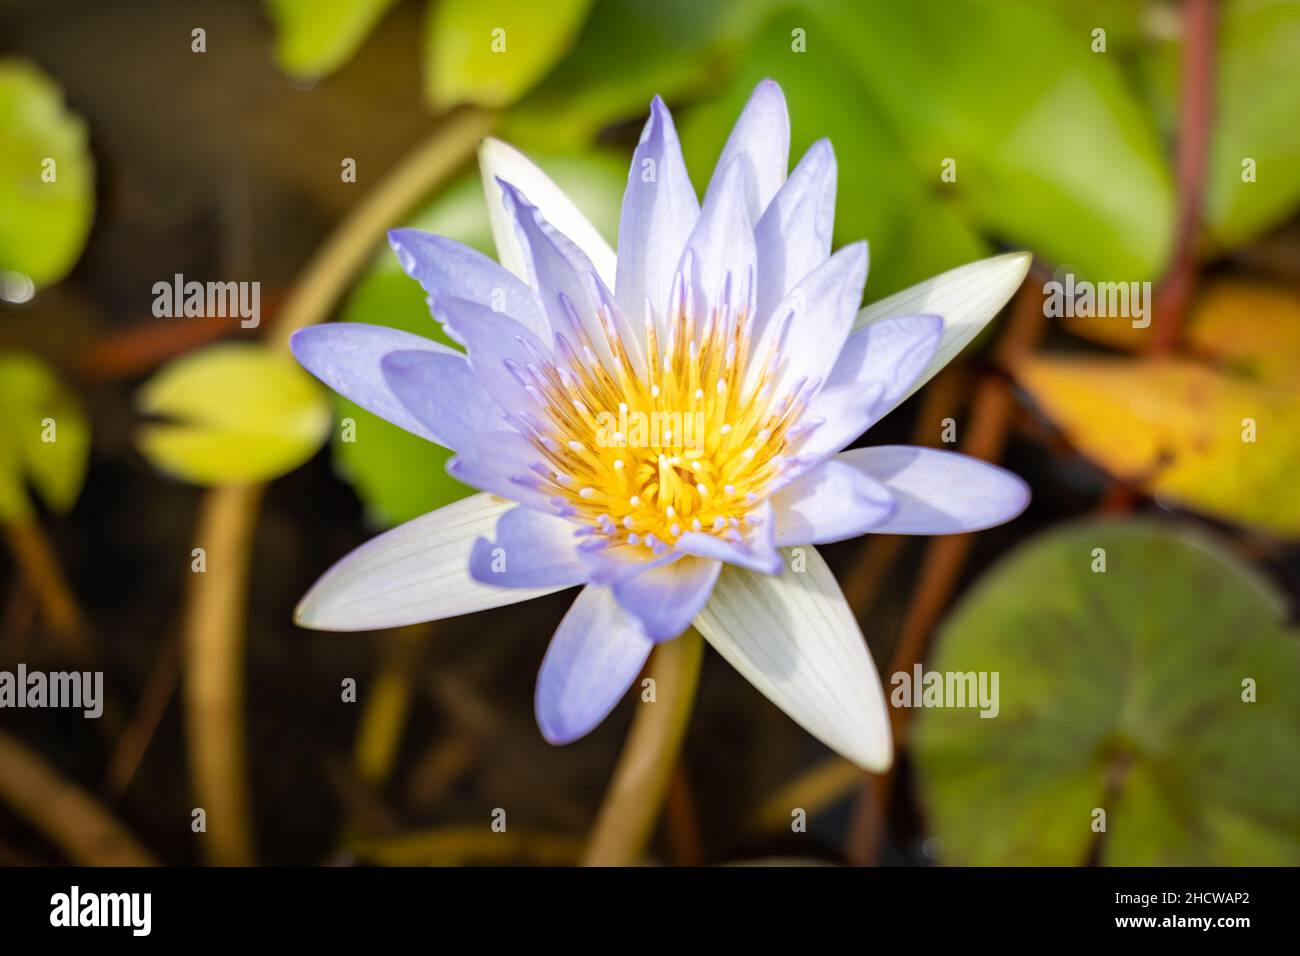 fiore di loto in fiore su uno stagno ornamentale nel giardino. Nelumbo nucifera, noto anche come loto indiano o loto sacro. Foto Stock